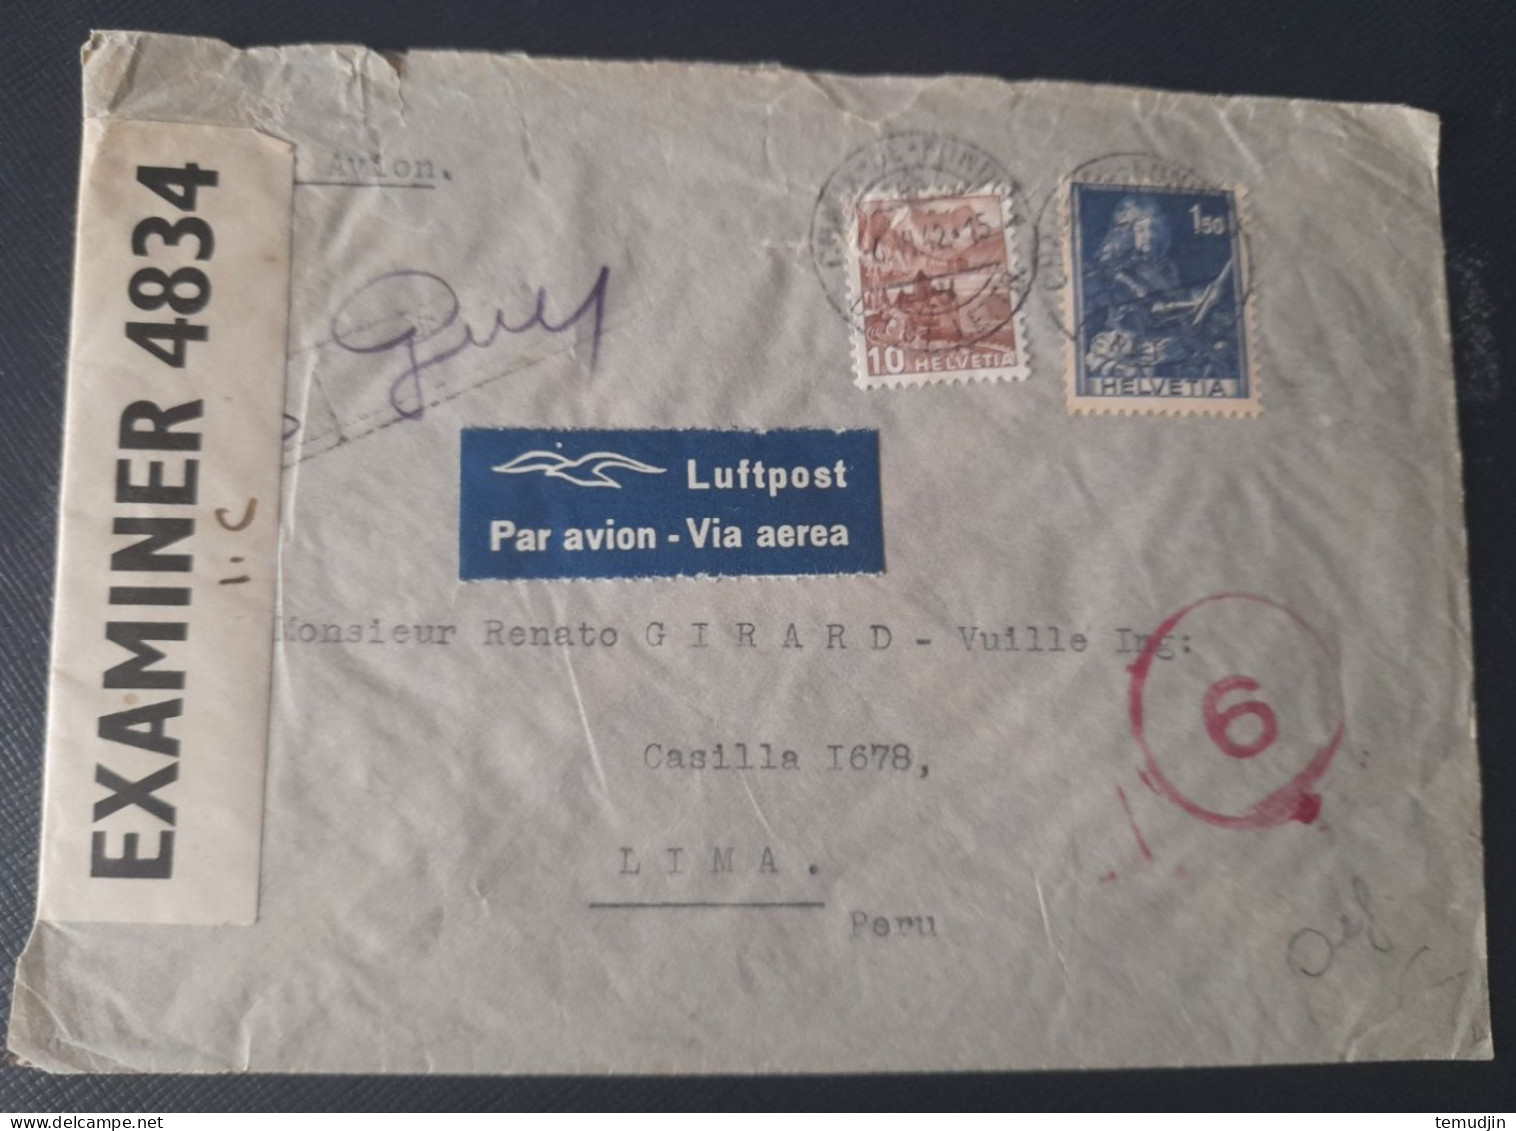 Suisse 1942 Lettre Pour Le Pérou Avec Censure Britannique Aux Bermudes - Covers & Documents